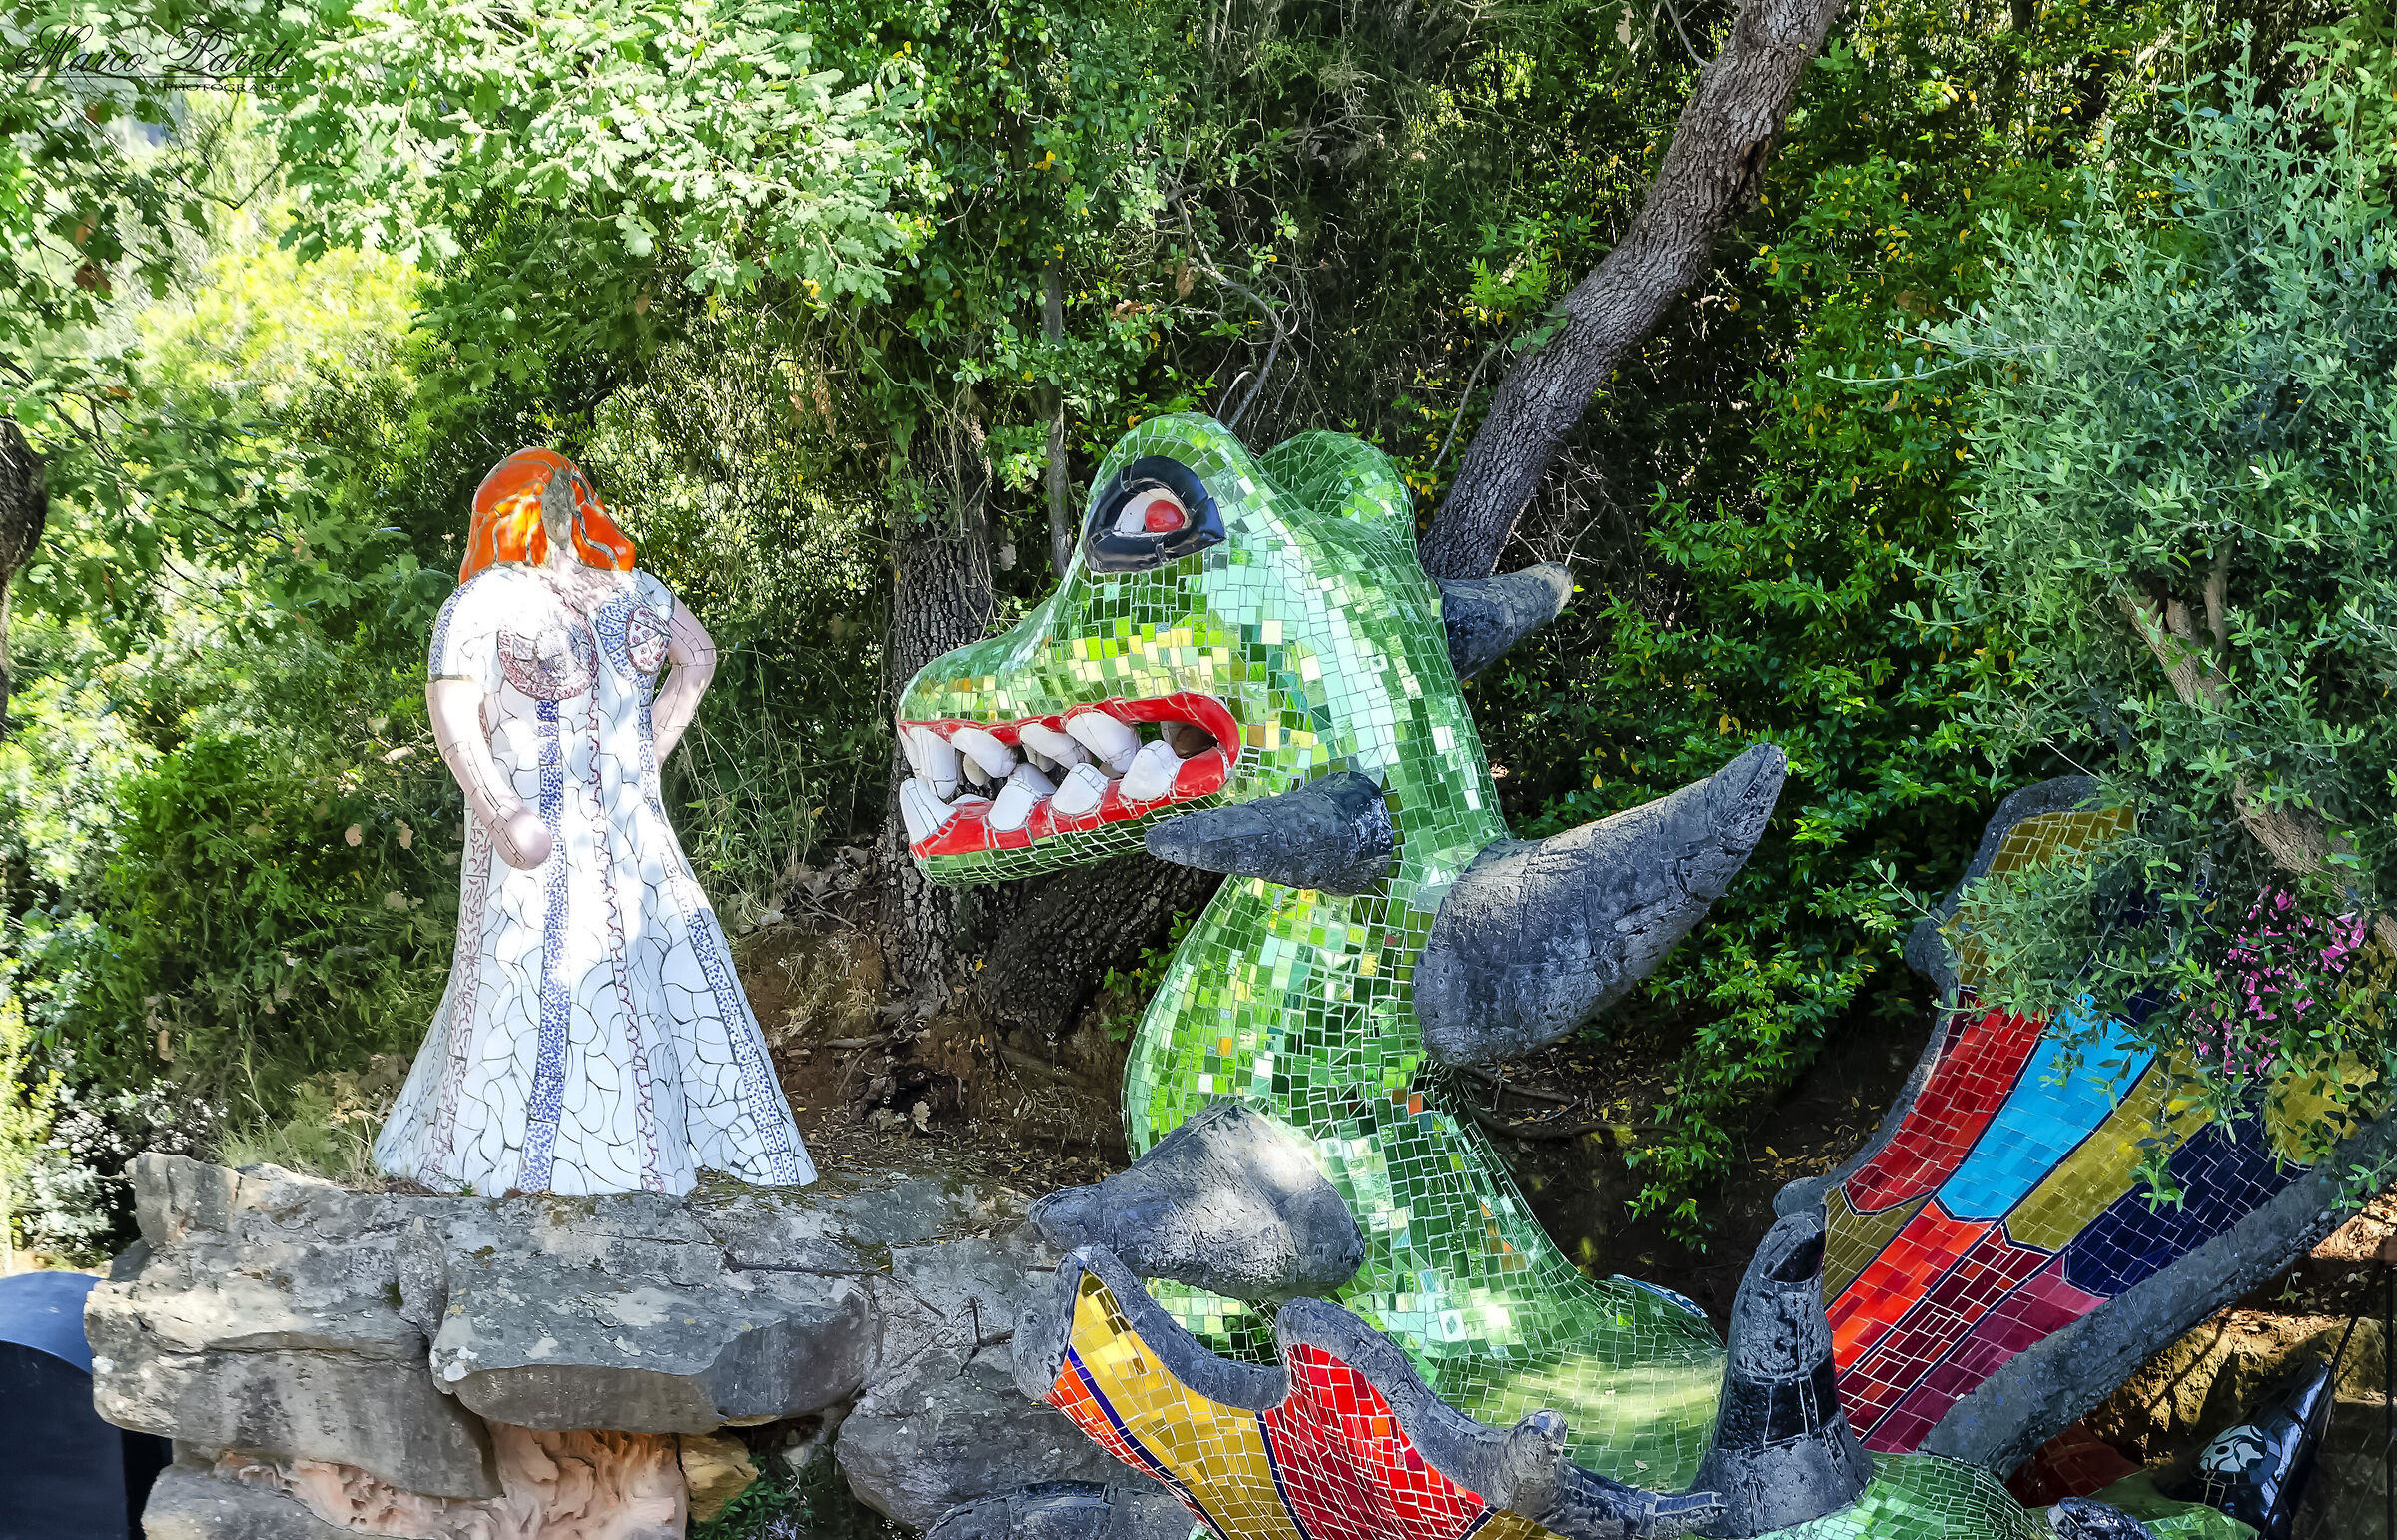 The Tarot Garden - Princess and Dragon...